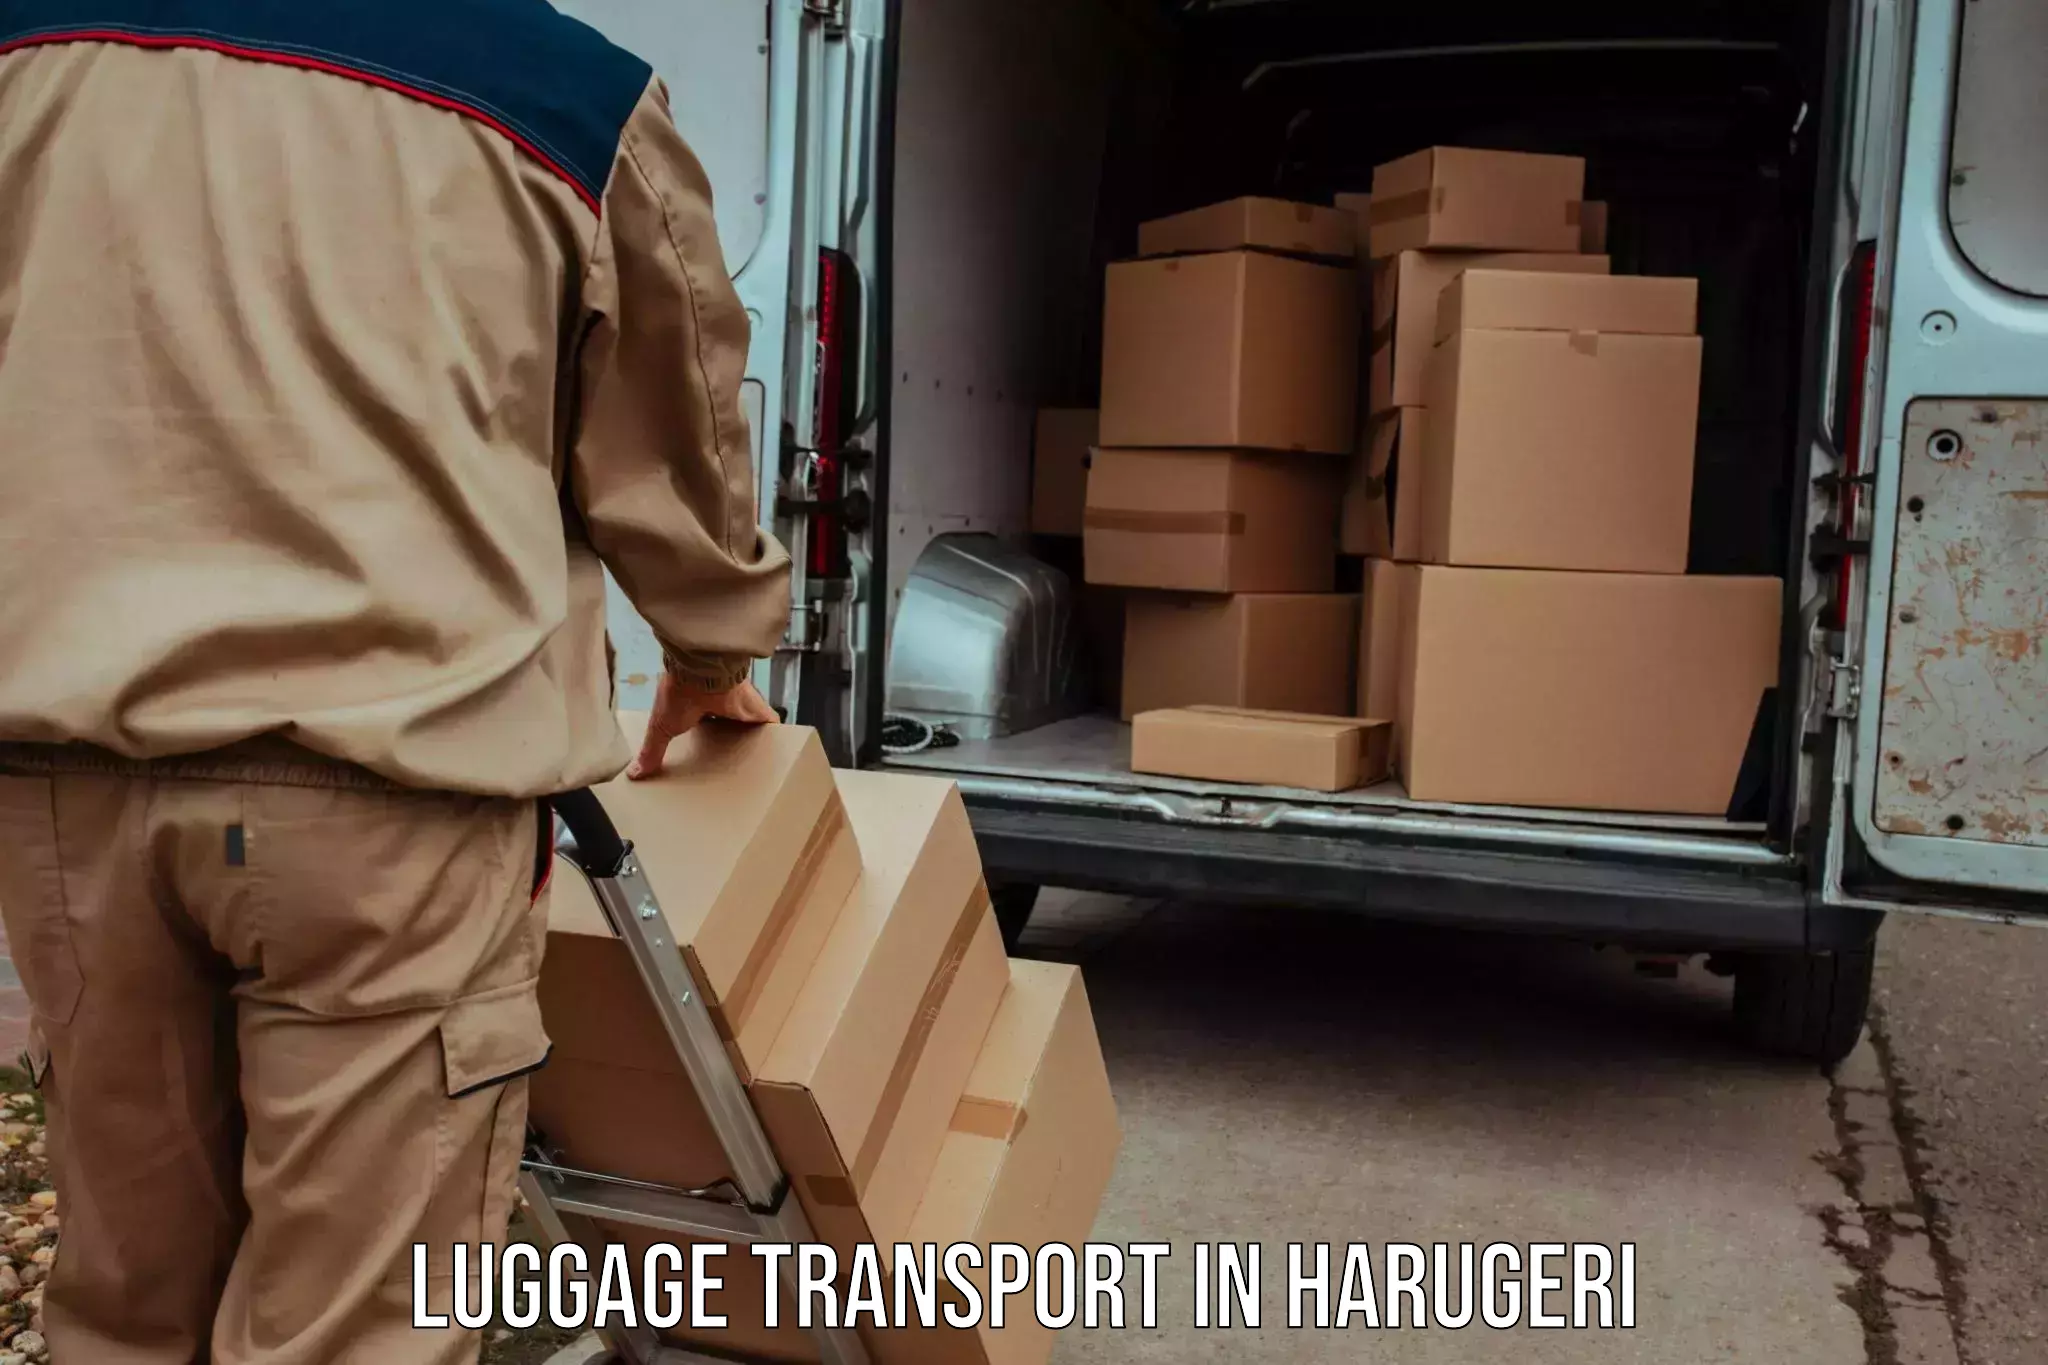 Urban luggage shipping in Harugeri